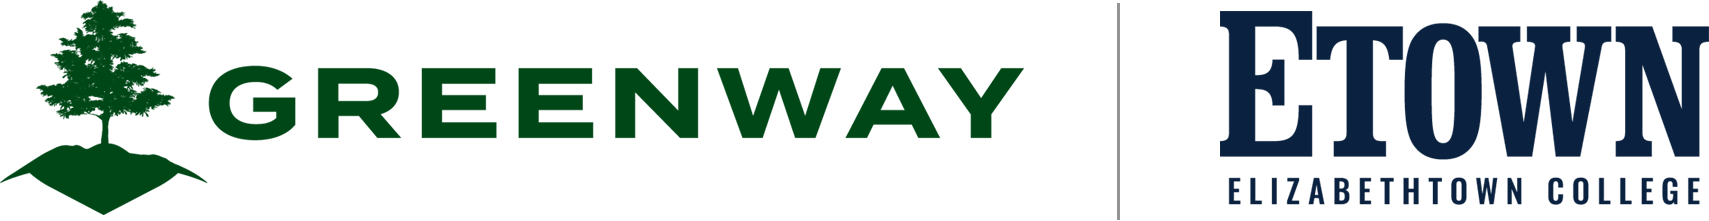 Greenway Etown Logo